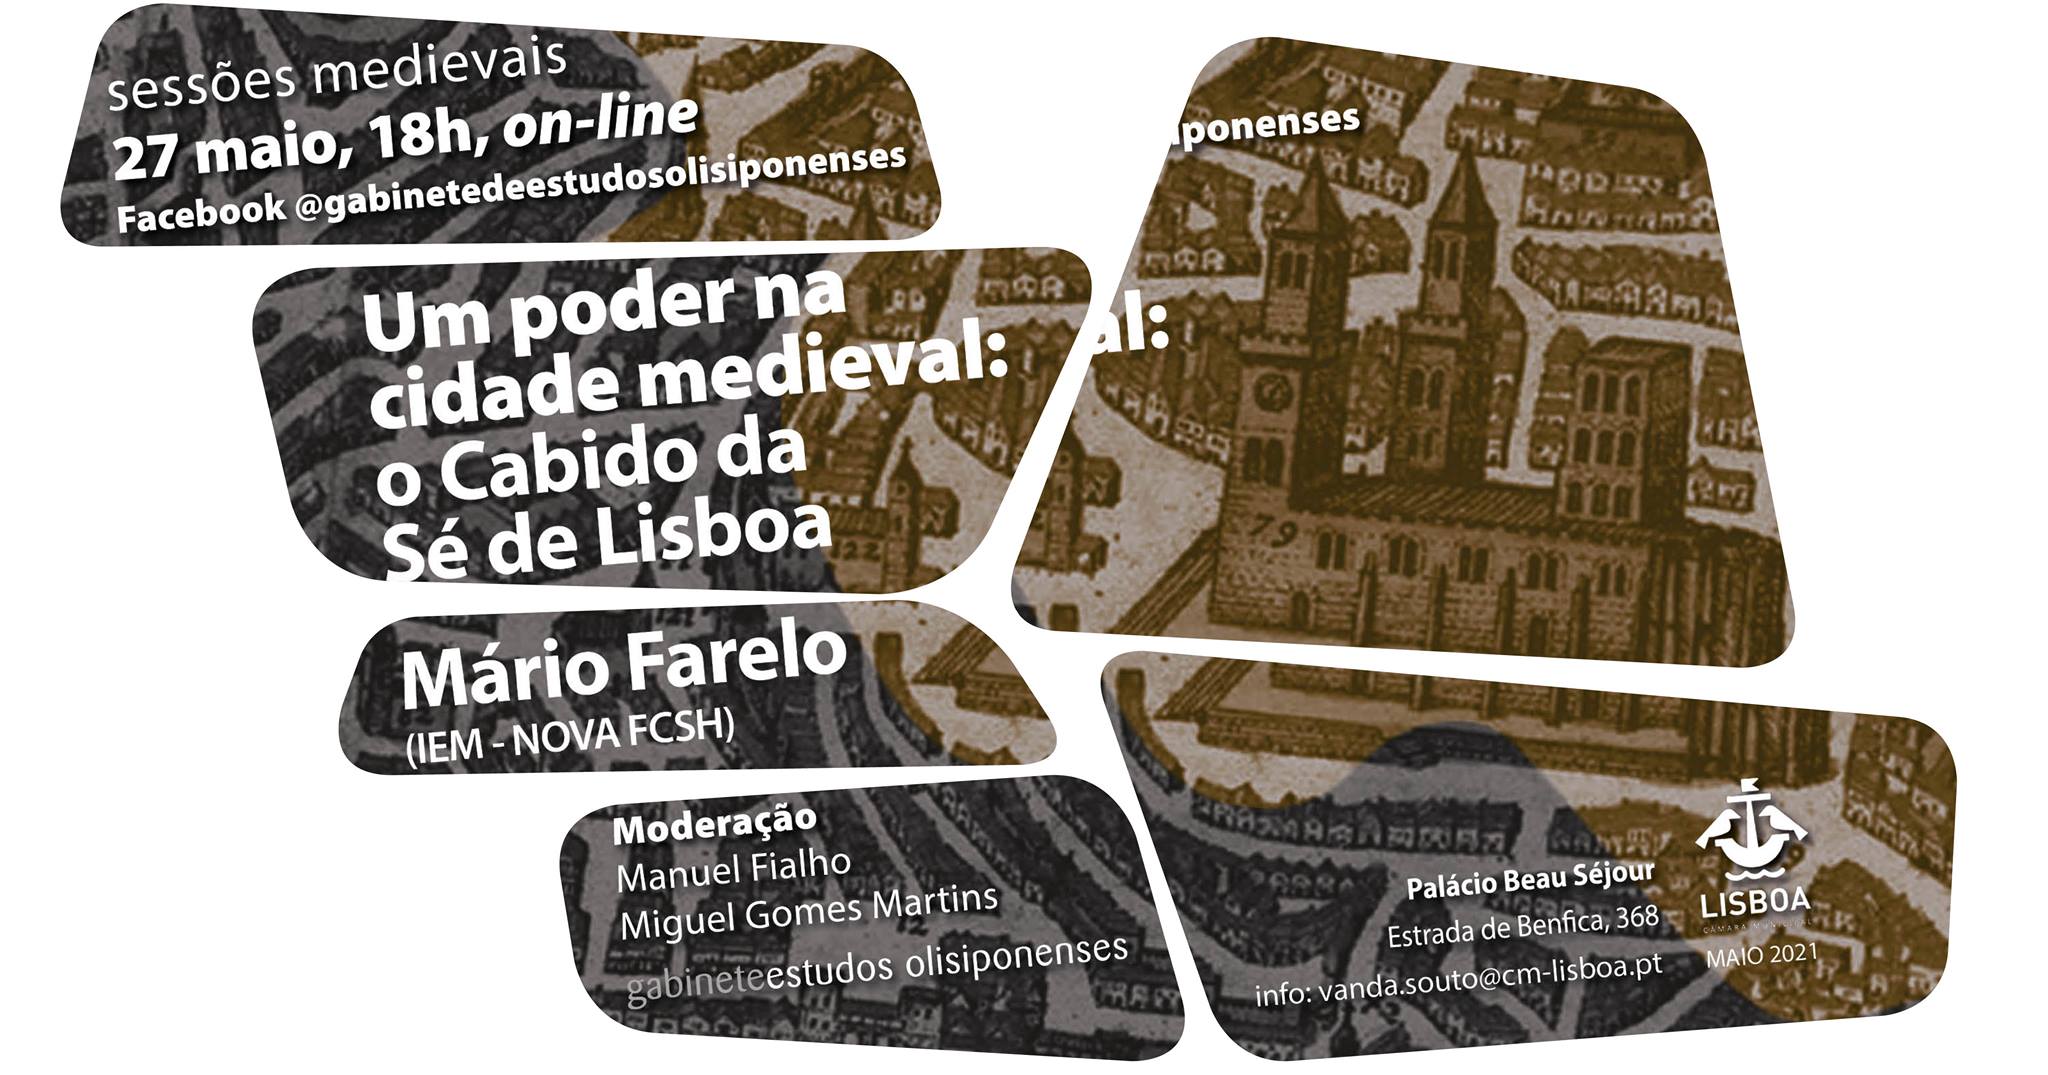 Um poder na cidade medieval: o Cabido da Sé de Lisboa